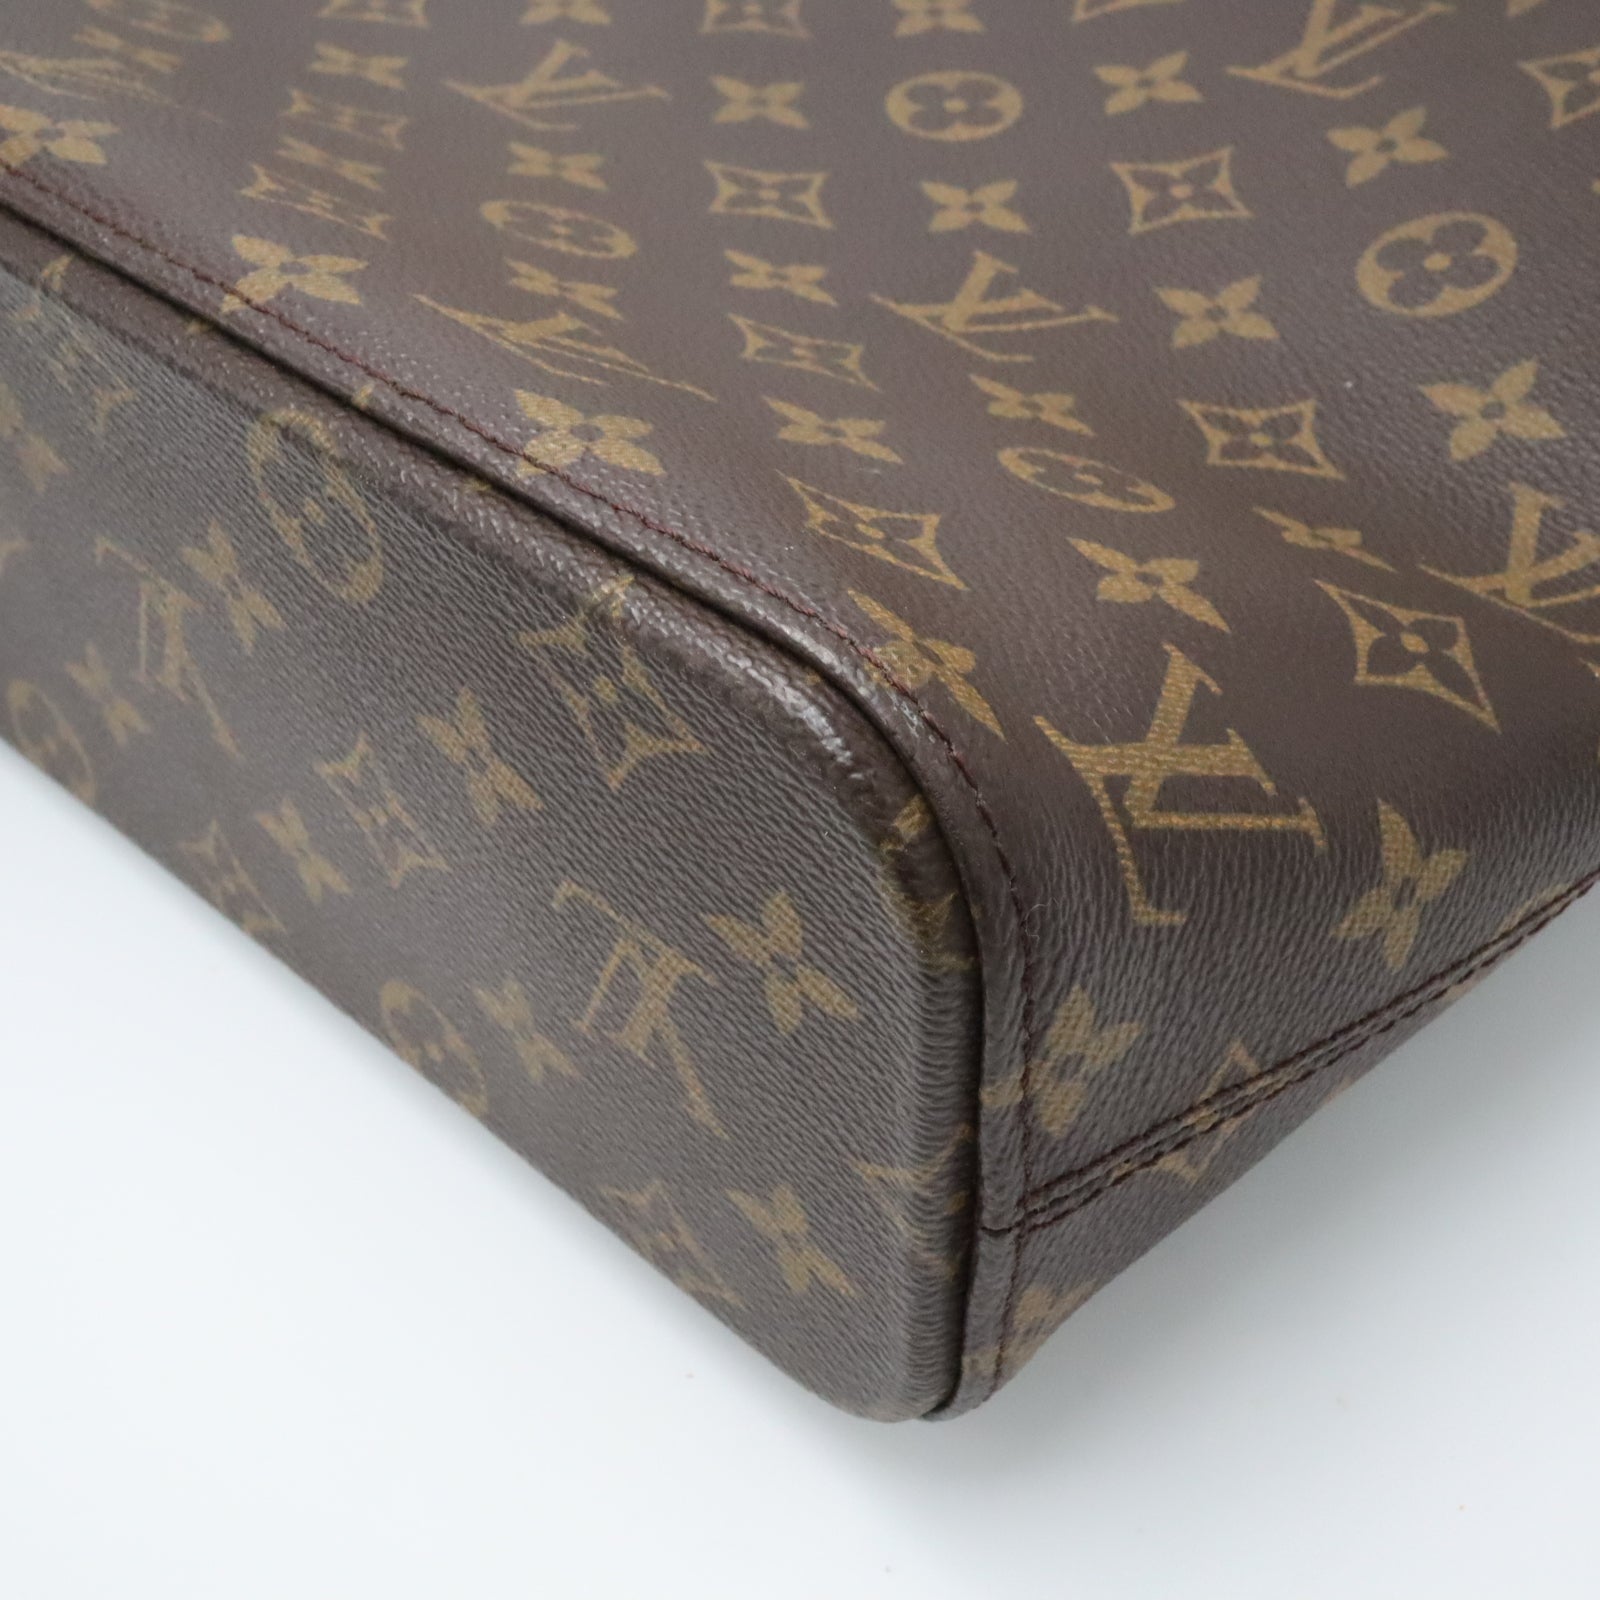 Second-hand Bag/Vintage LOUIS VUITTON Tote Bag M51155